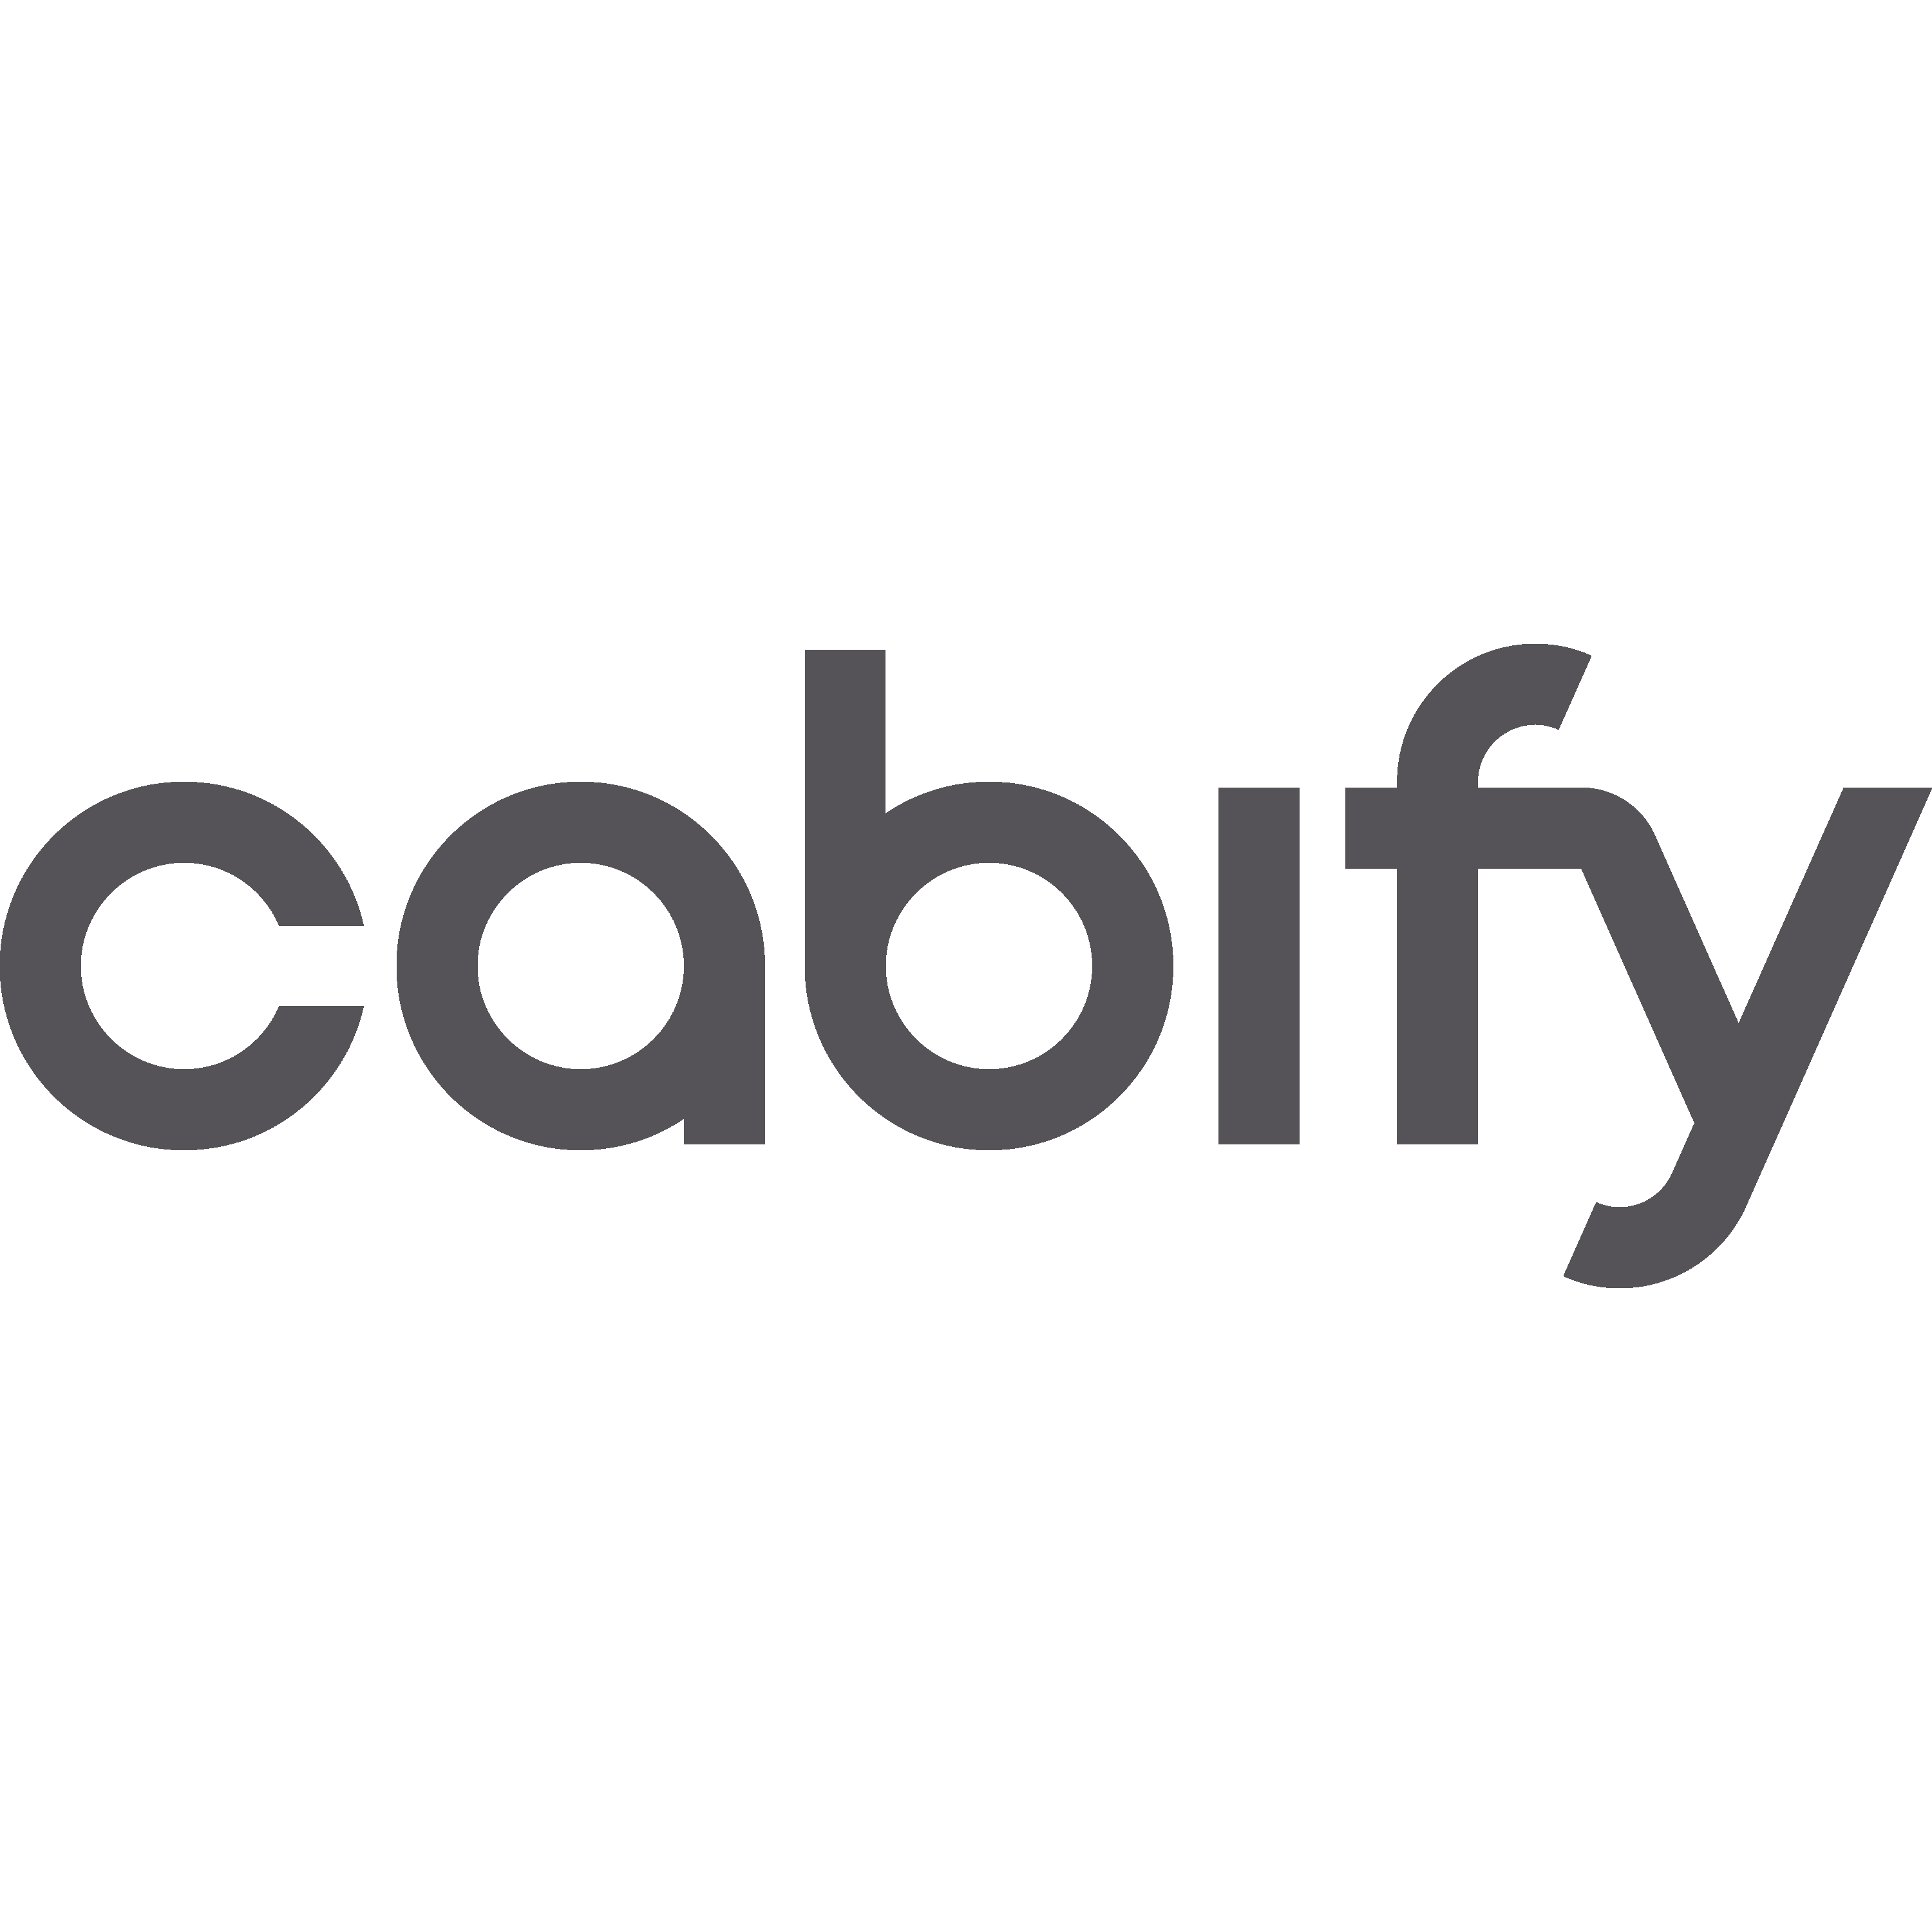 Cabify Logo  Transparent Gallery